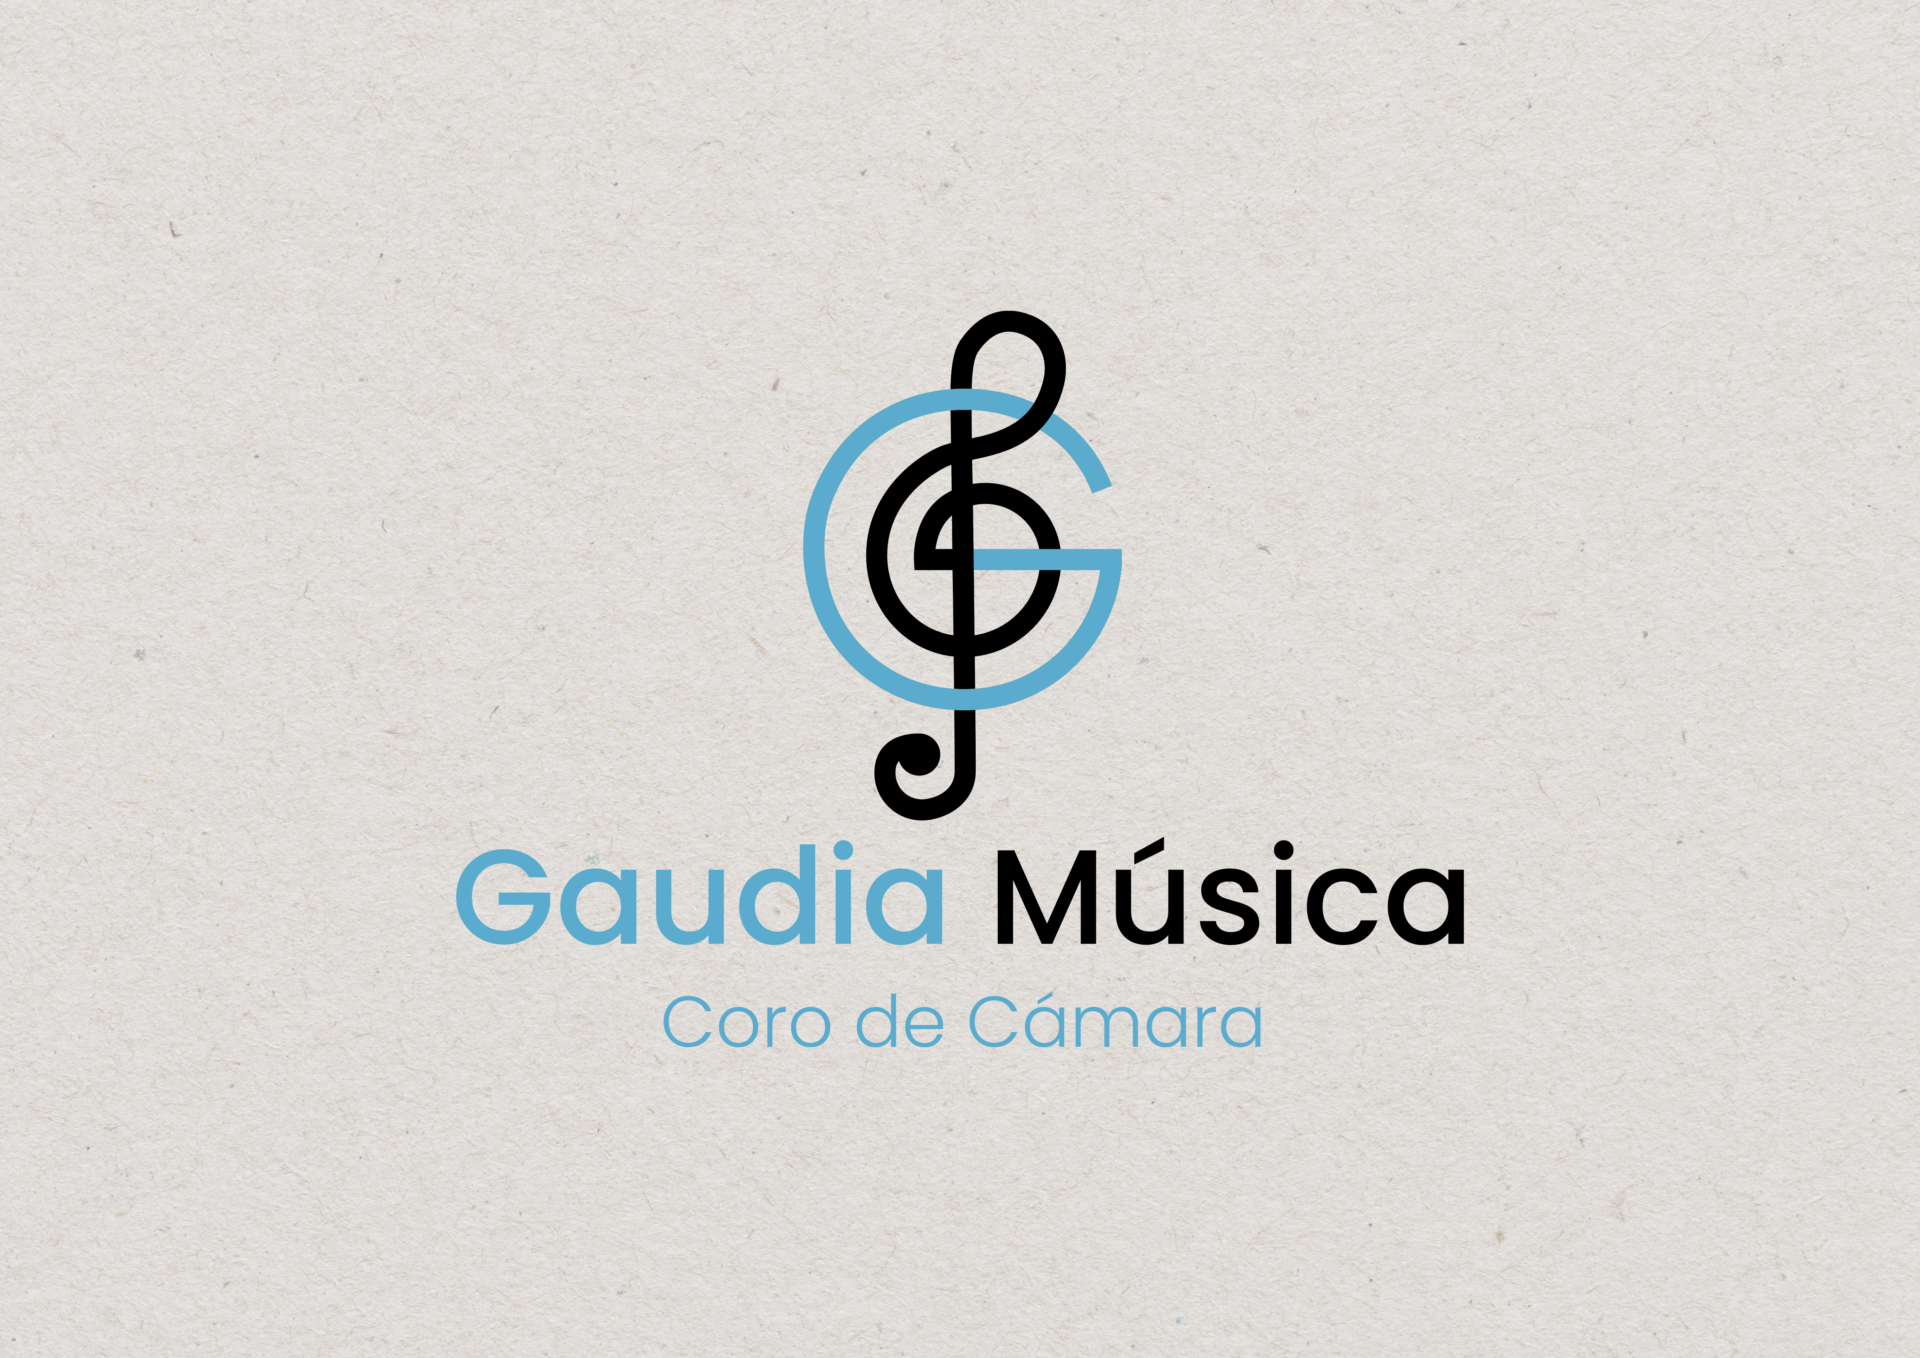 Gaudia-musica-06